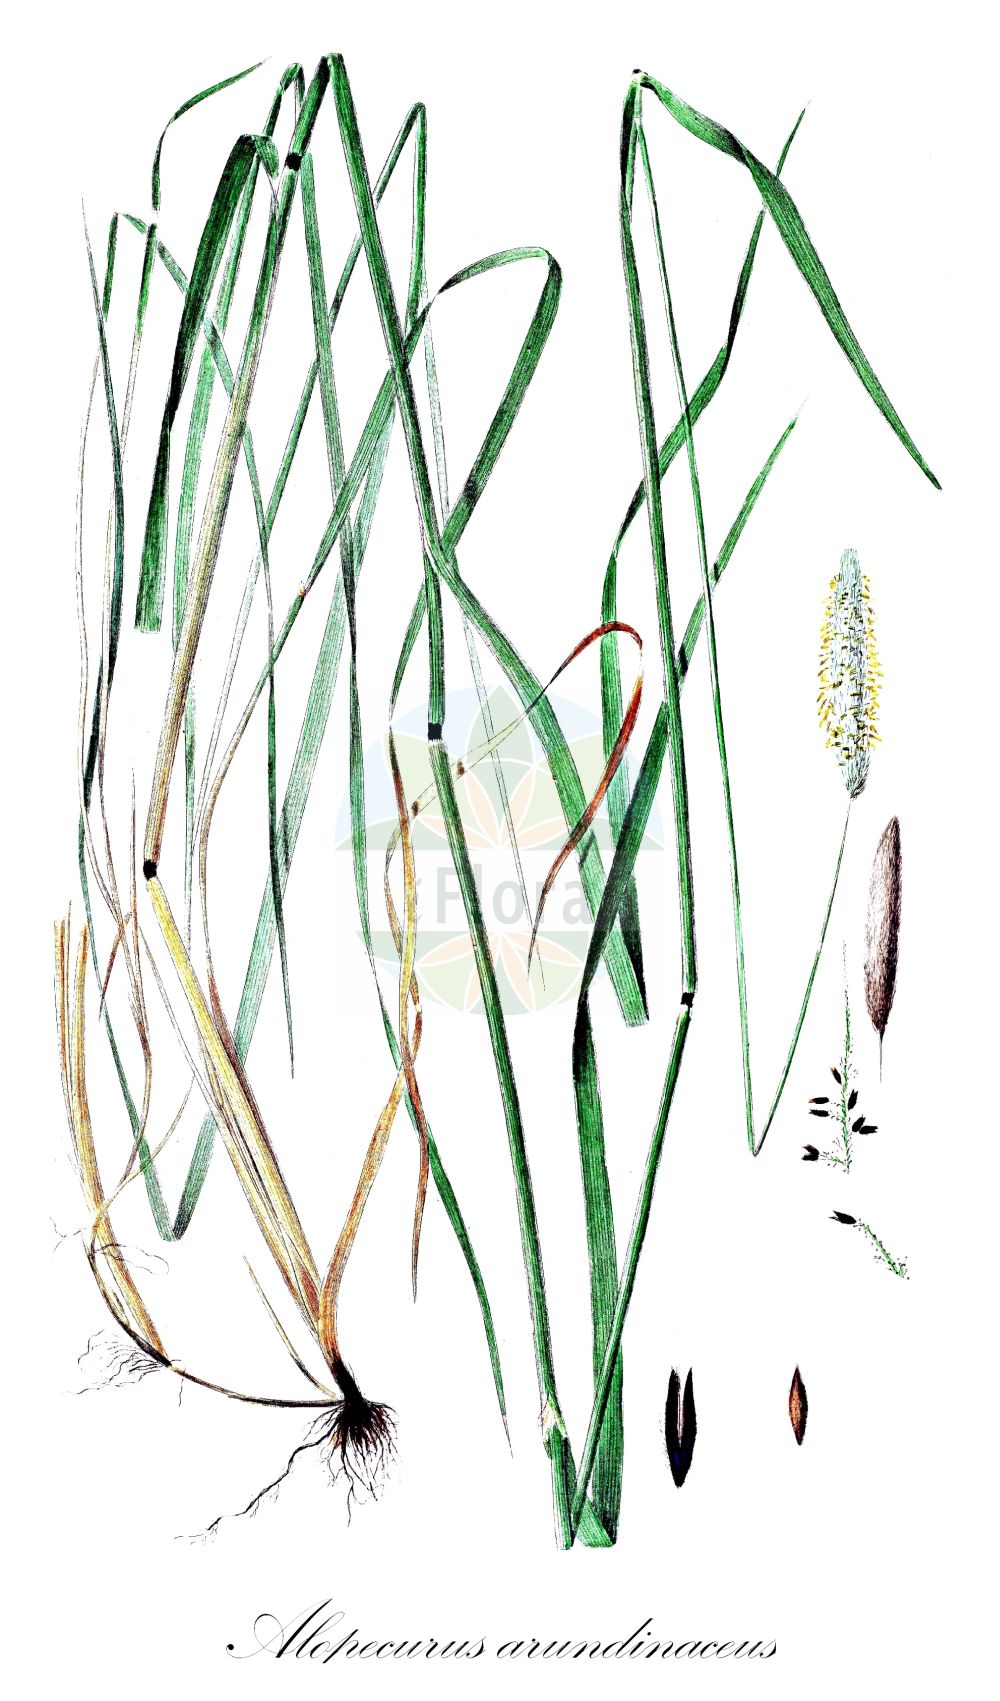 Historische Abbildung von Alopecurus arundinaceus (Rohr-Fuchsschwanzgras - Creeping Foxtail). Das Bild zeigt Blatt, Bluete, Frucht und Same. ---- Historical Drawing of Alopecurus arundinaceus (Rohr-Fuchsschwanzgras - Creeping Foxtail). The image is showing leaf, flower, fruit and seed.(Alopecurus arundinaceus,Rohr-Fuchsschwanzgras,Creeping Foxtail,Alopecurus arundinaceus,Alopecurus castellanus,Alopecurus lasiostachys,Alopecurus liouvilleanus,Alopecurus muticus,Alopecurus nigricans,Alopecurus salvatoris,Alopecurus ventricosus,Rohr-Fuchsschwanzgras,Rohr-Fuchsschwanz,Creeping Foxtail,Creeping Meadow Foxtail,Reed Foxtail,Alopecurus,Fuchsschwanzgras,Foxtail,Poaceae,Süßgräser,Grass family,Blatt,Bluete,Frucht,Same,leaf,flower,fruit,seed,Oeder (1761-1883))